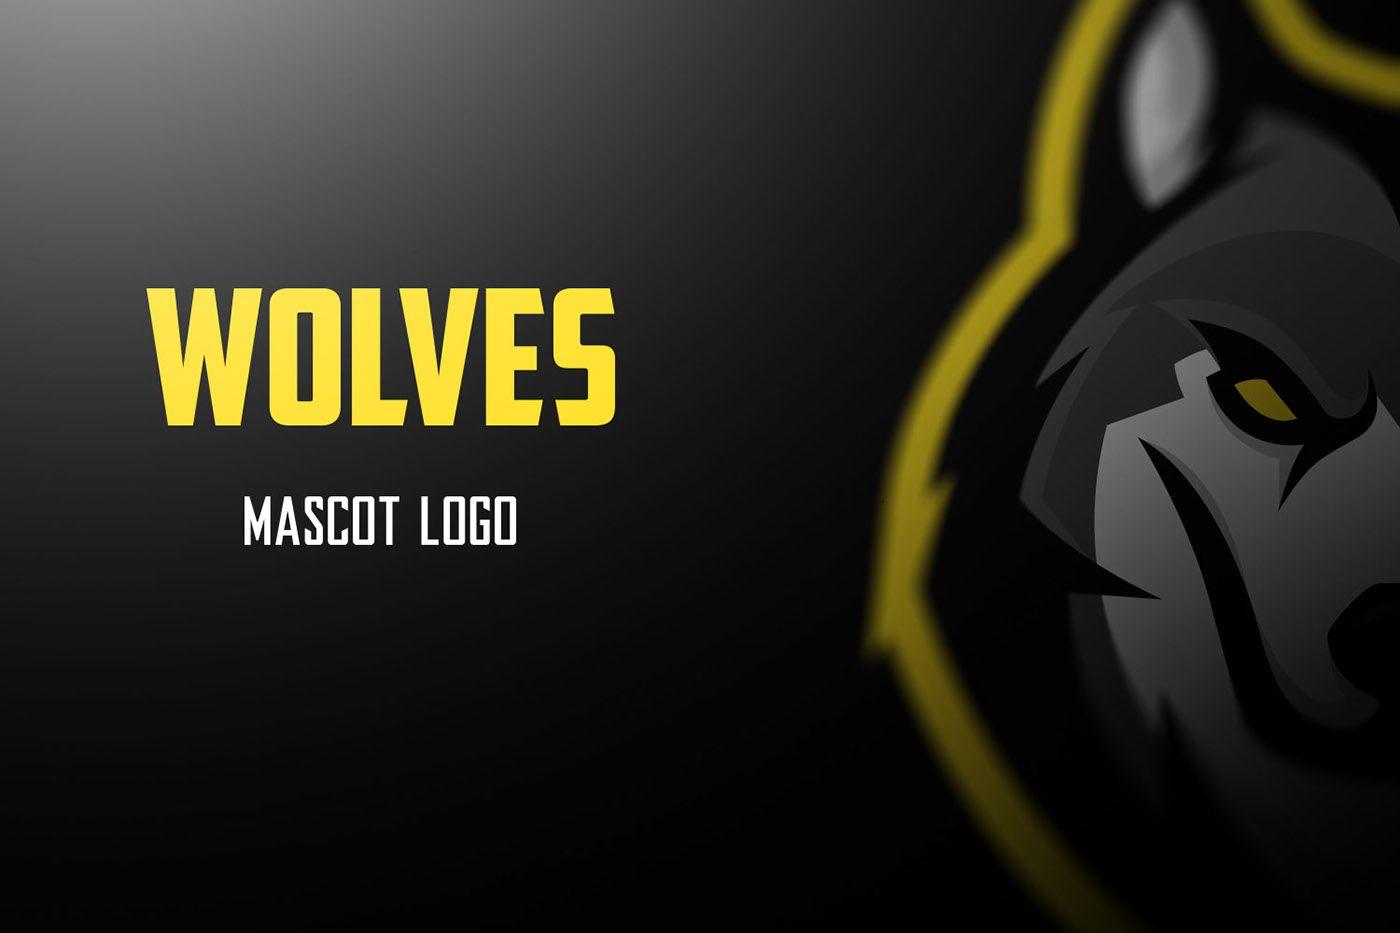 Wolves Logo - Wolves mascot logo [SOLD] on Behance